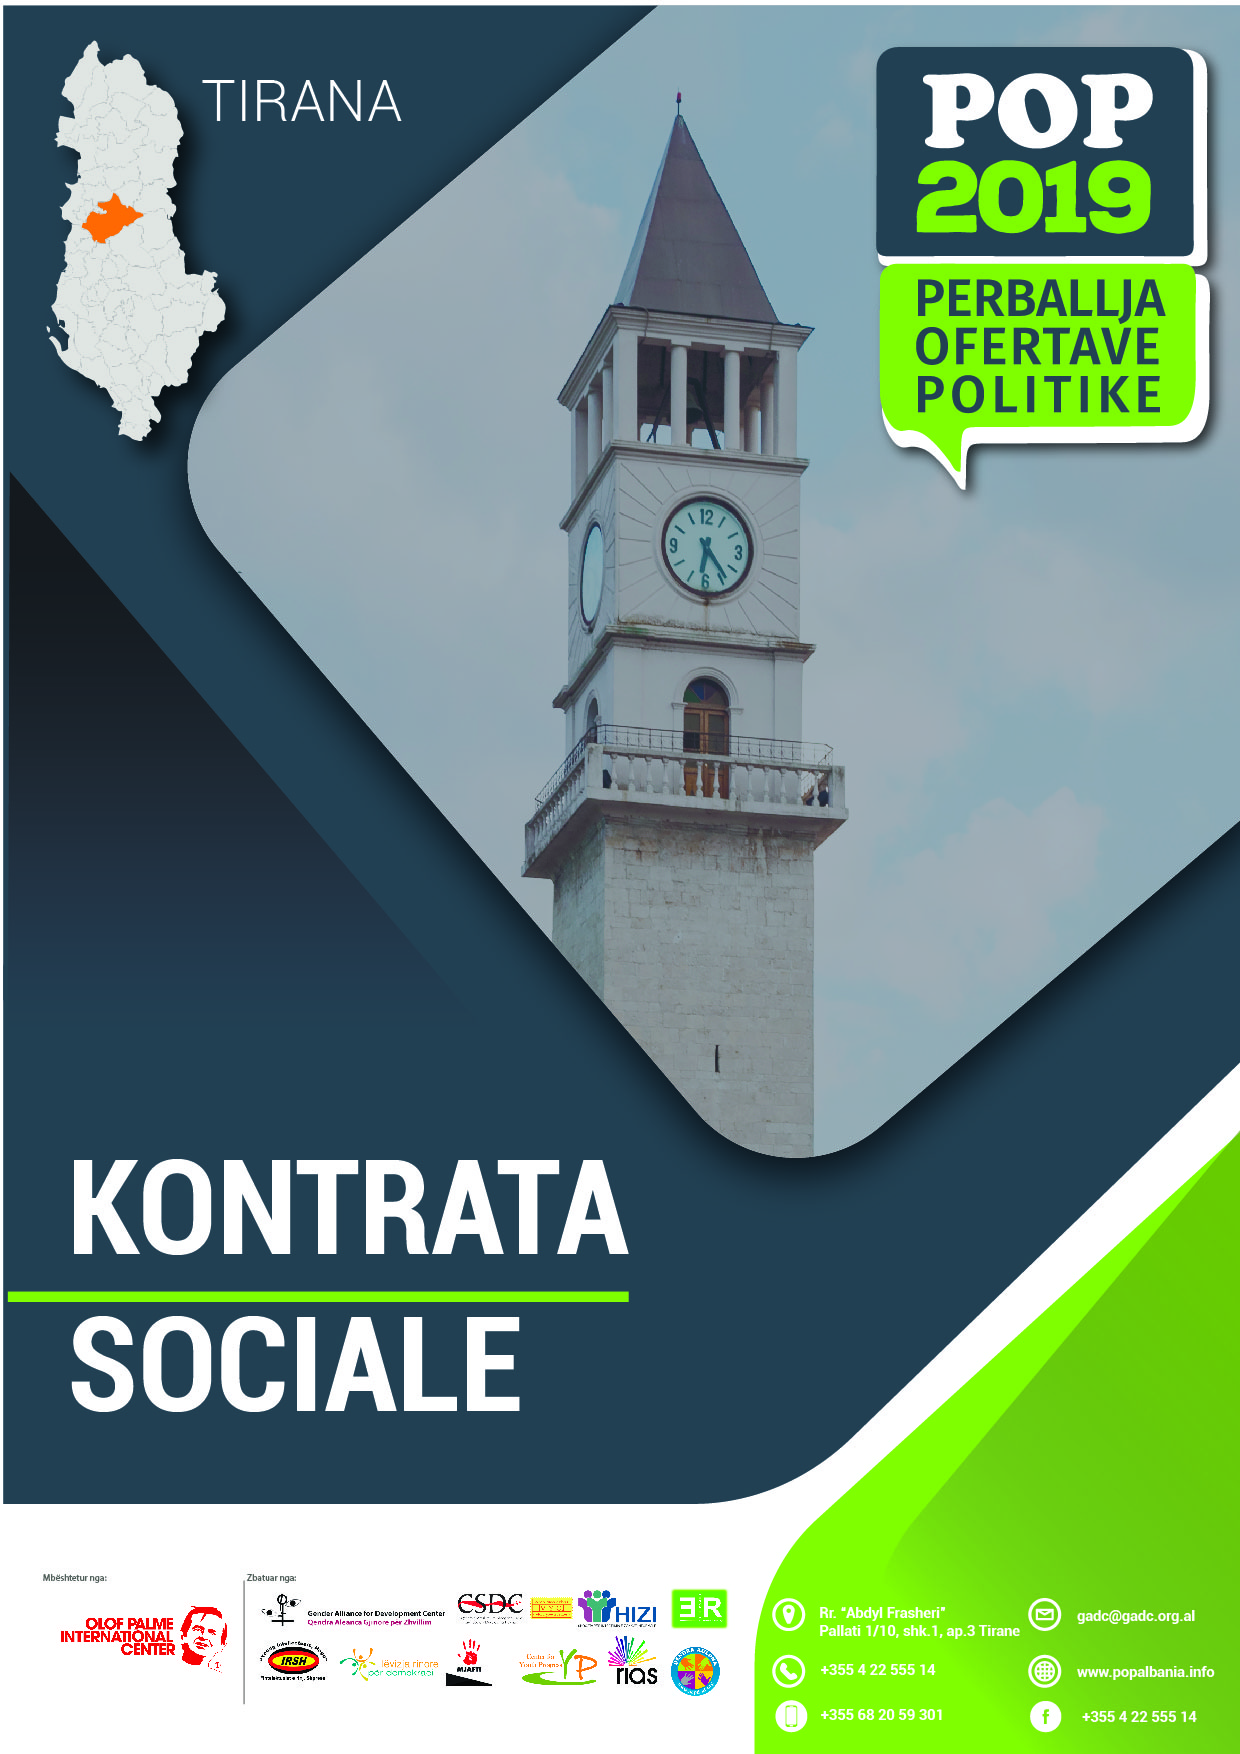 Kontrata Sociale me prioritetet kryesore Tiranë